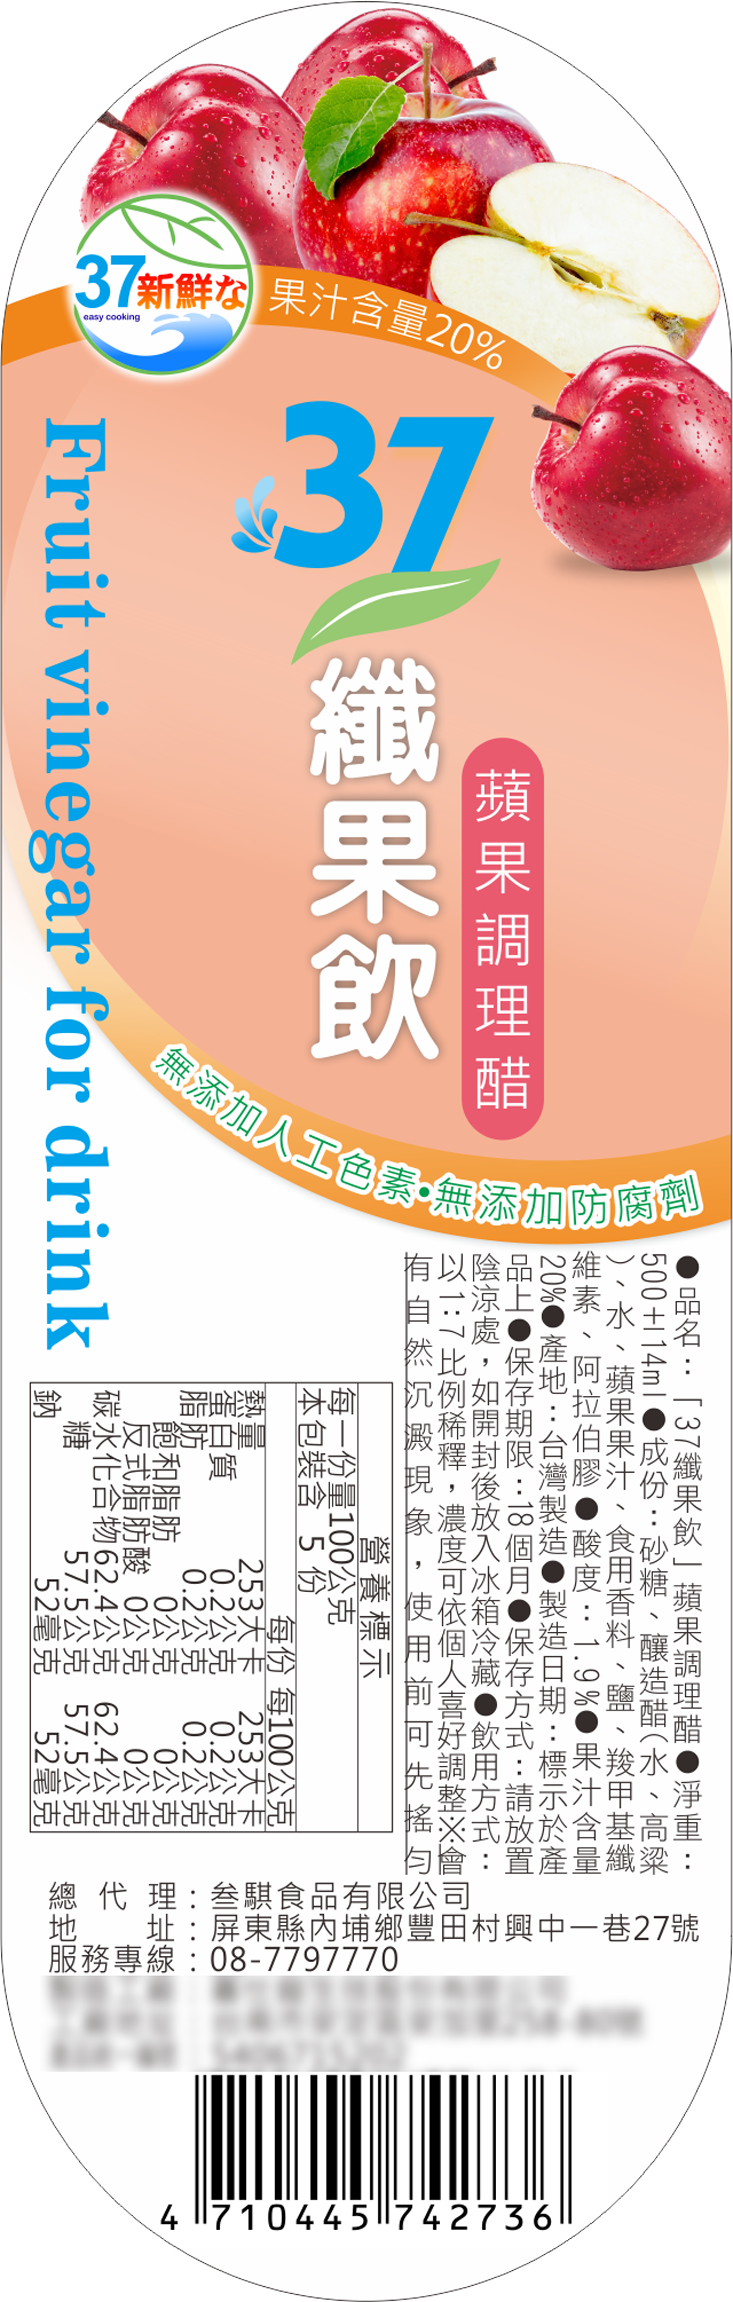 【老爸ㄟ廚房】37纖果飲 果醋禮盒 (500ml/2瓶/盒) 清真認證